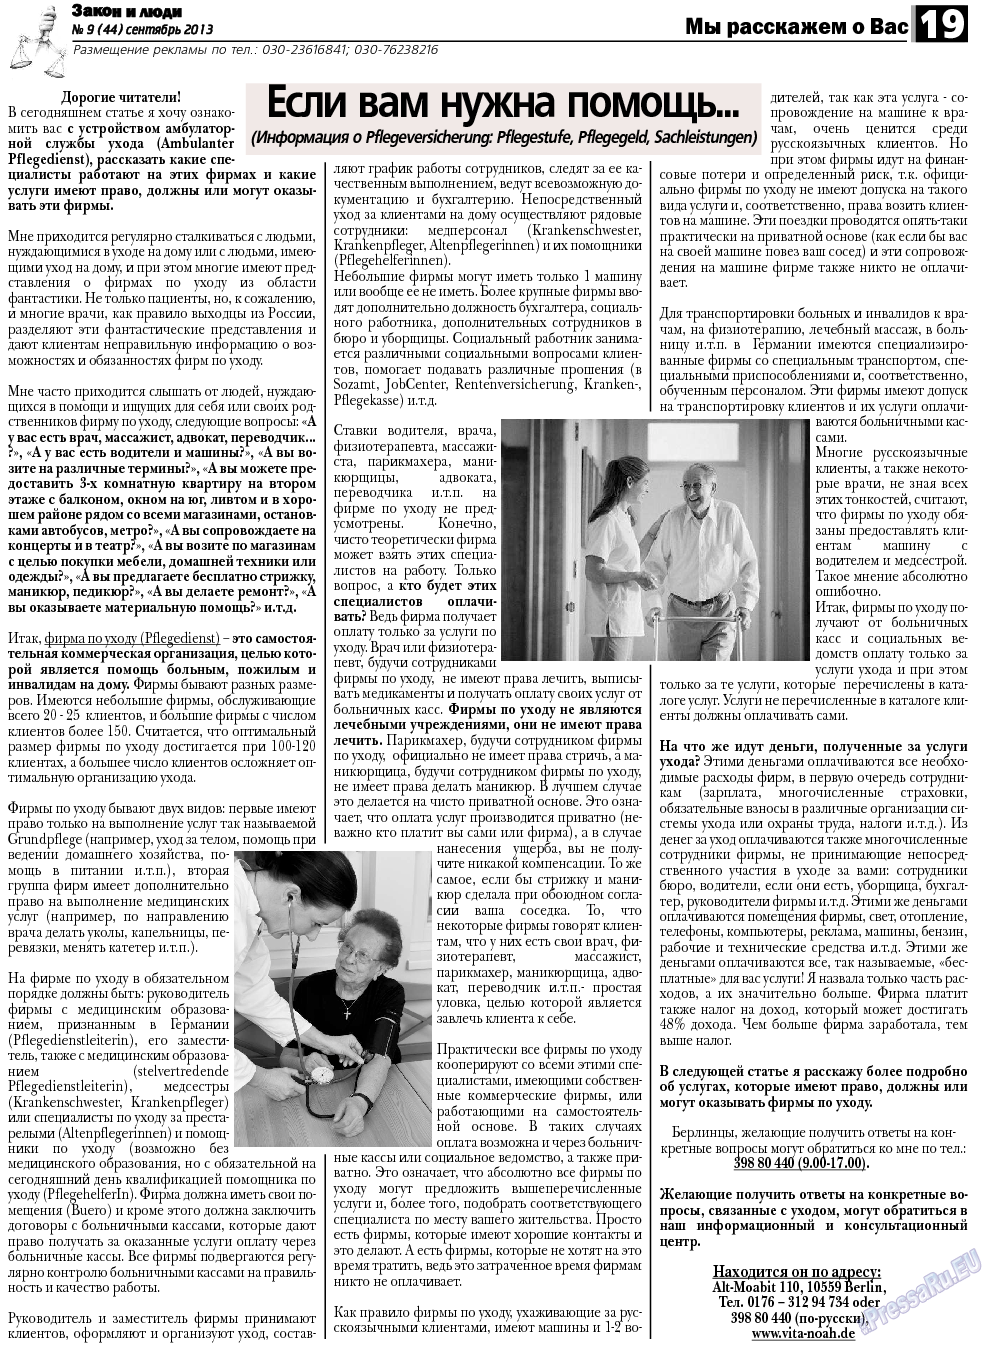 Закон и люди (газета). 2013 год, номер 9, стр. 19